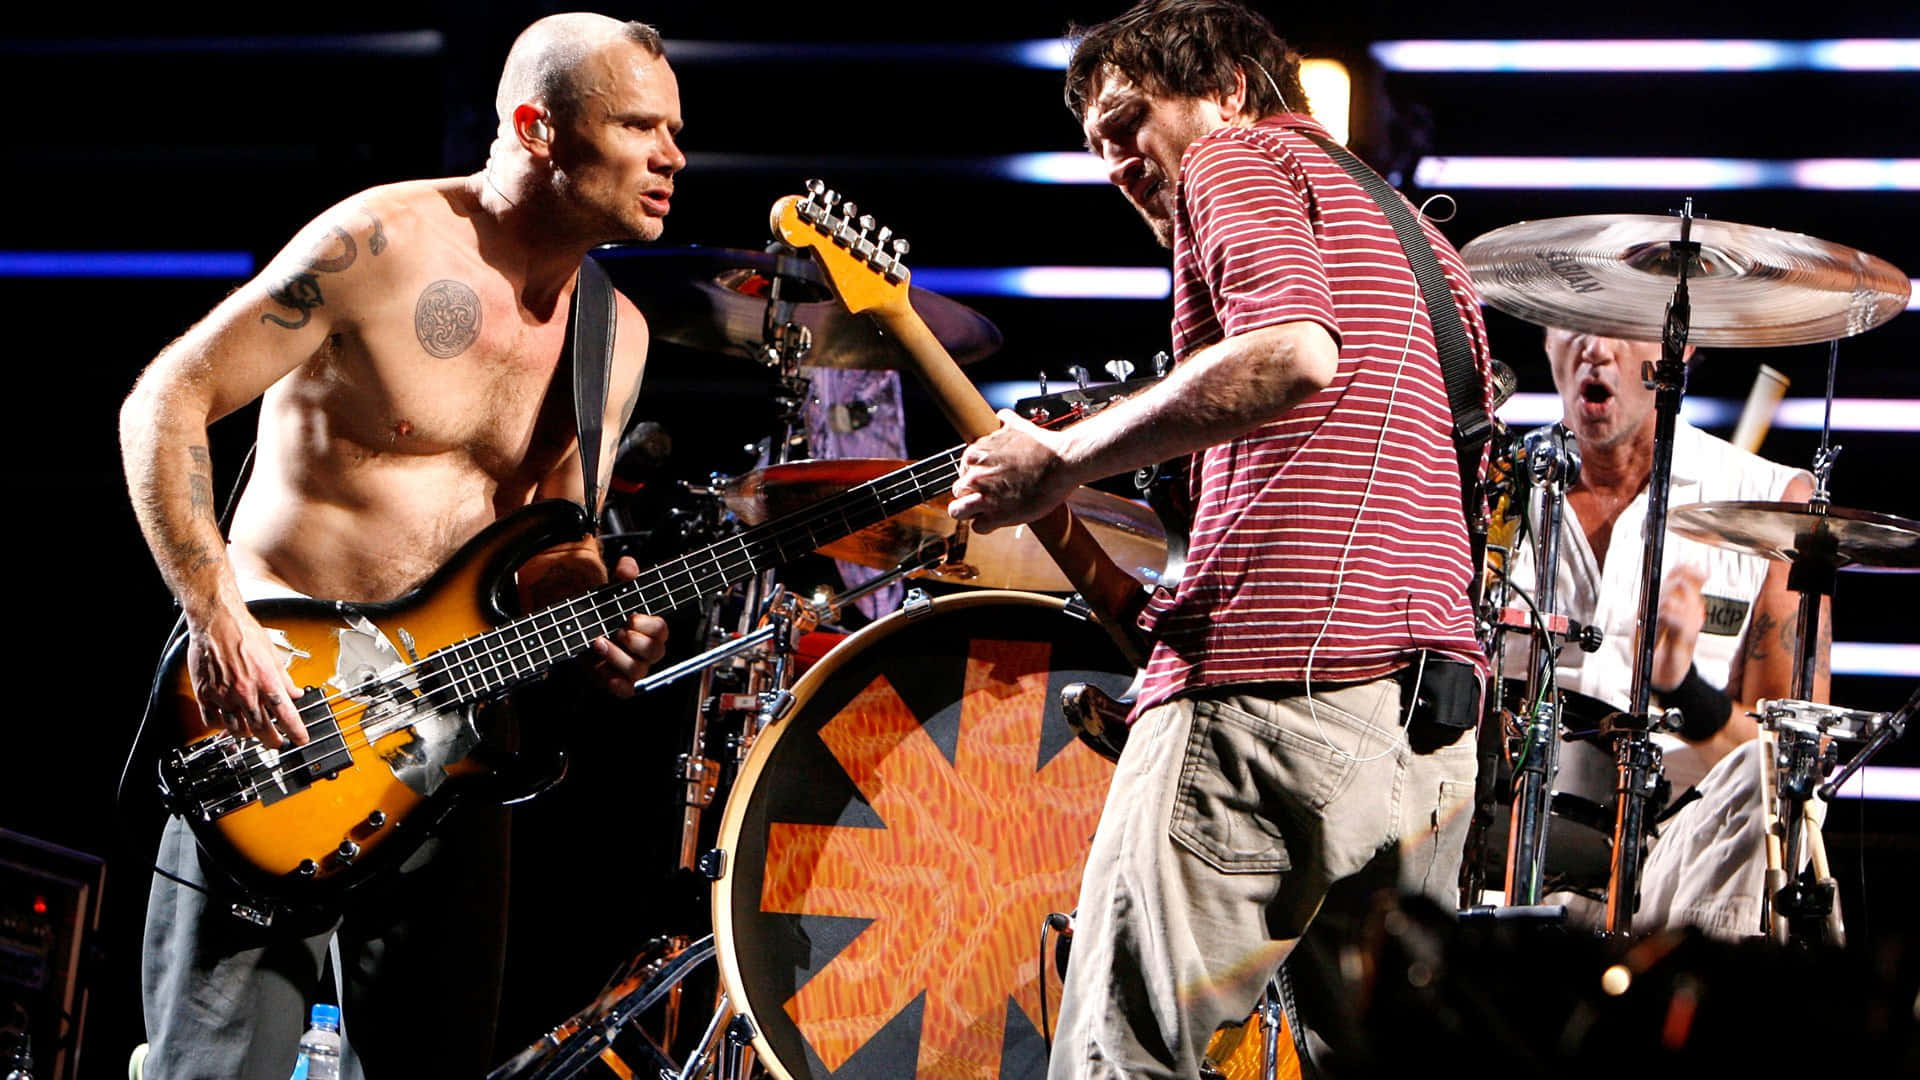 Diered Hot Chili Peppers Rocken Die Bühne. Wallpaper